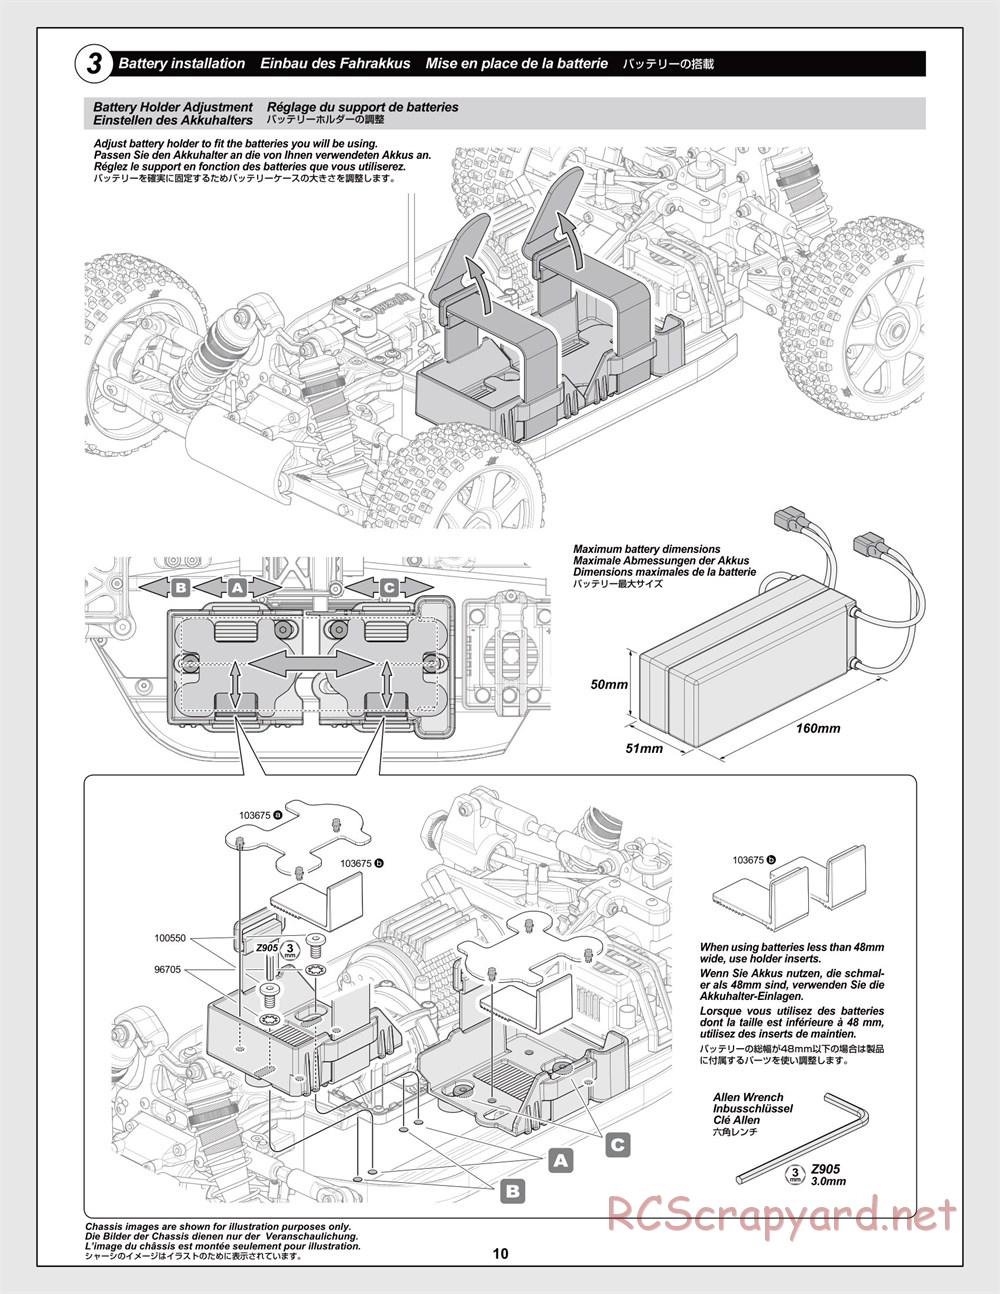 HPI - Trophy Flux Buggy - Manual - Page 10